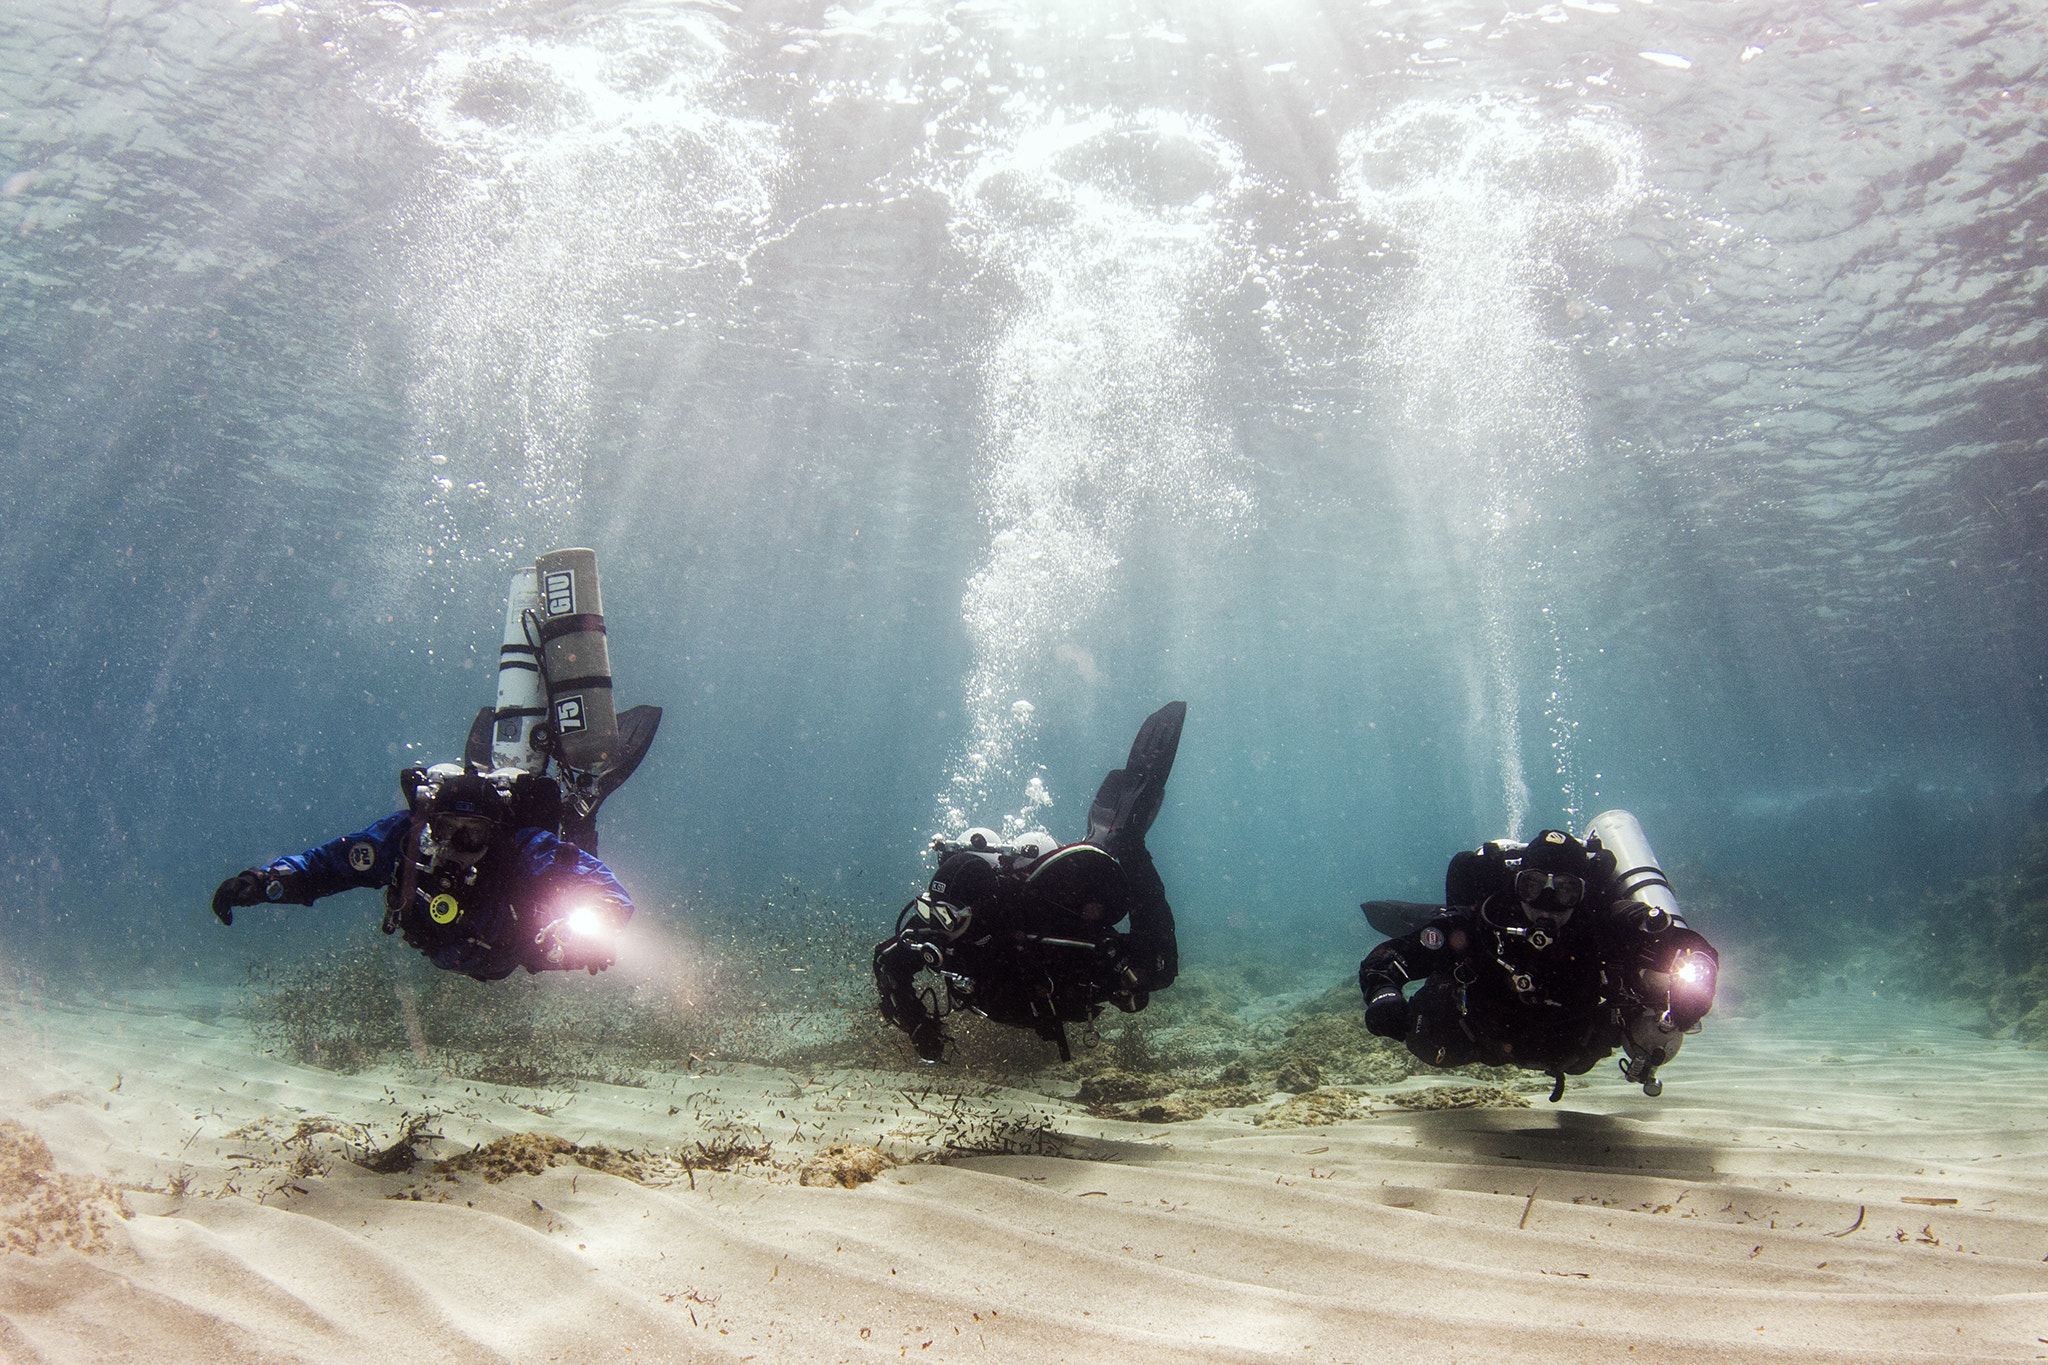 Tokina AT-X 10-17mm F3.5-4.5 DX Fisheye sample photo. Global underwater explorers photography